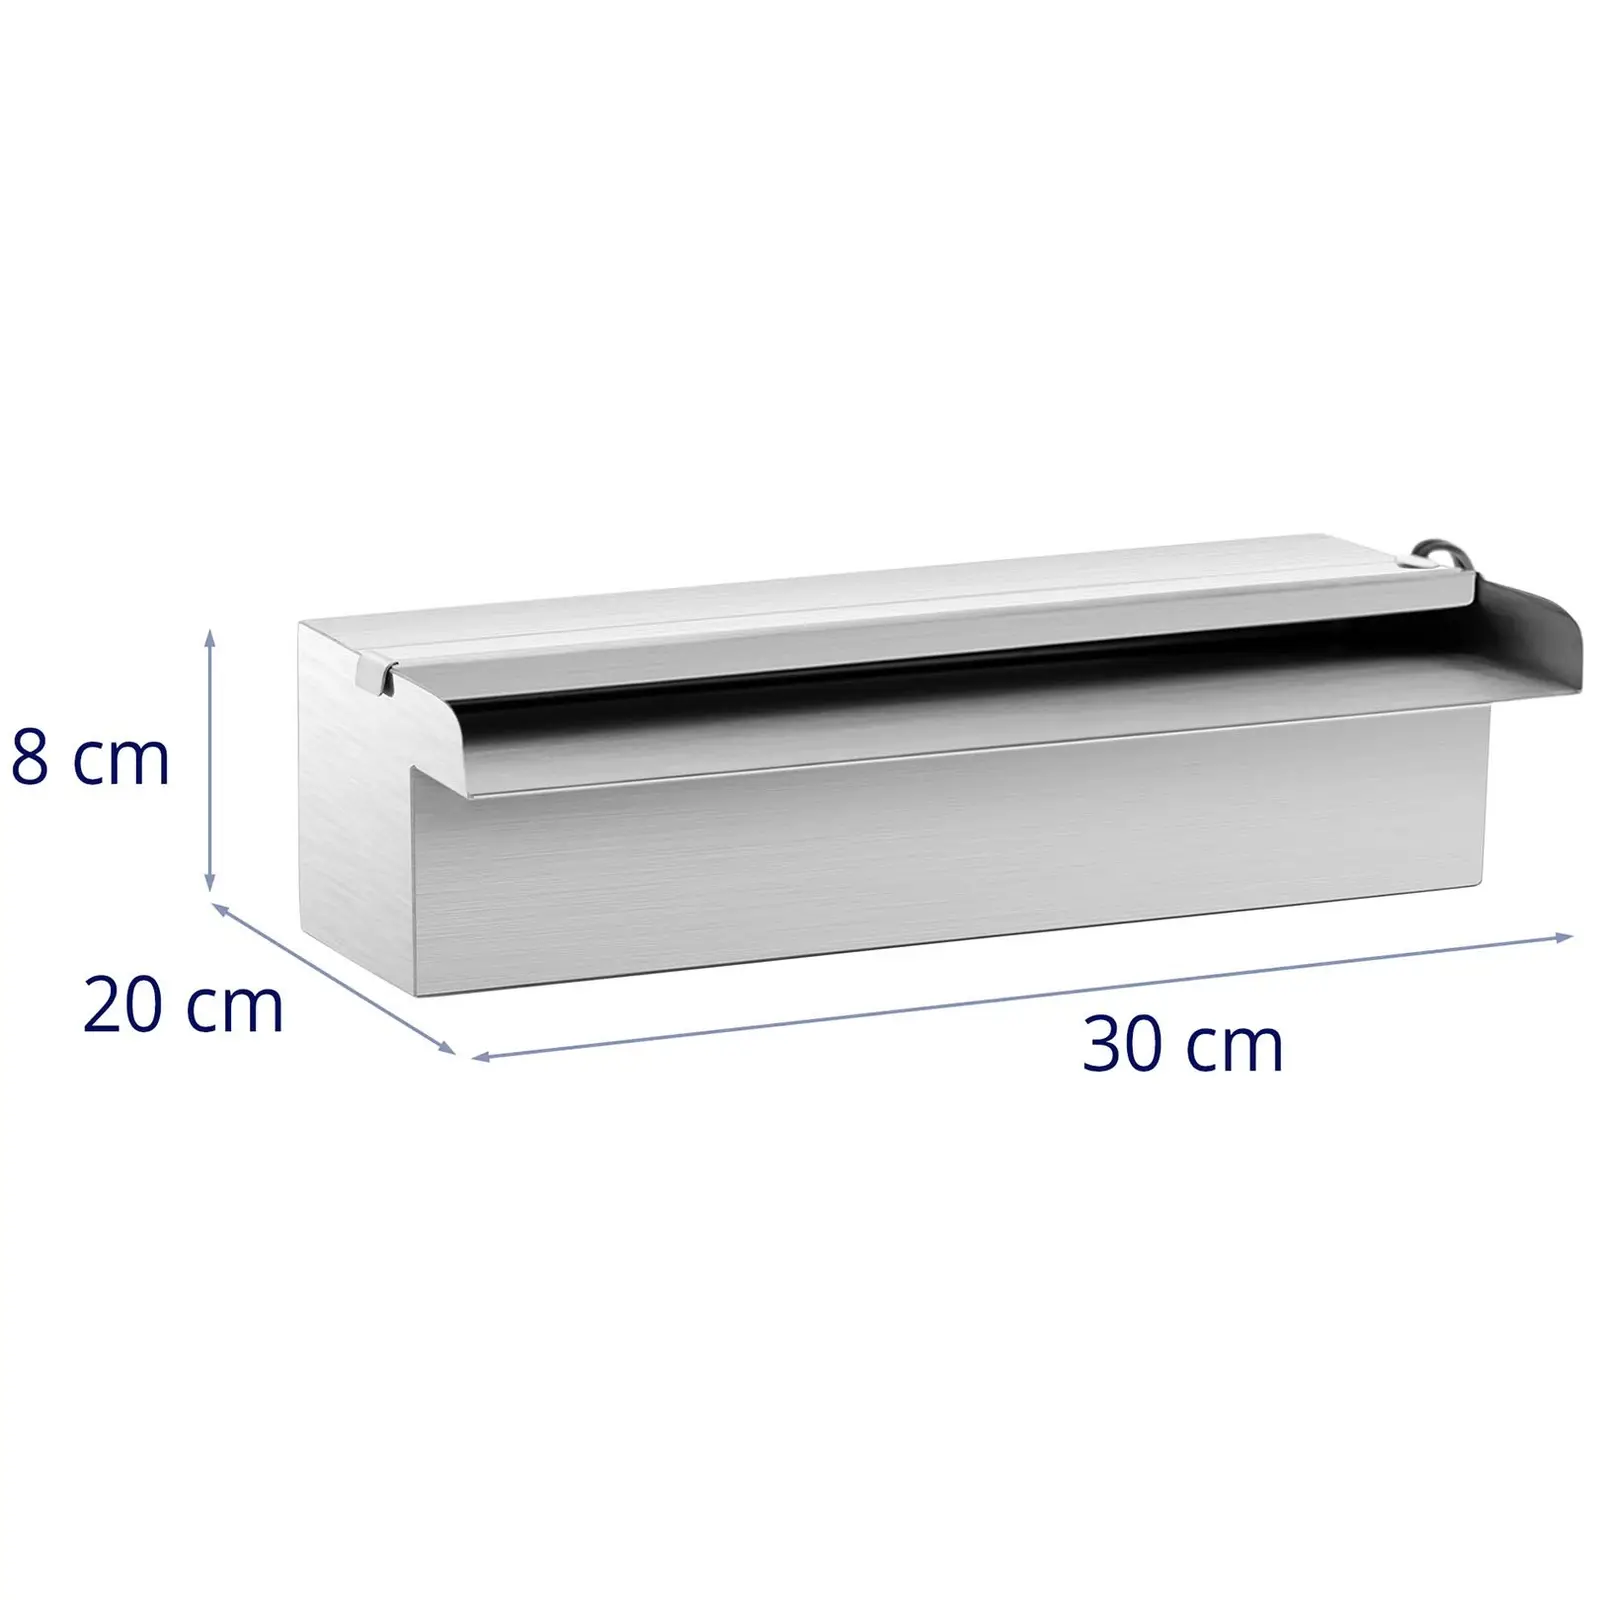 Chrlič vody - 30 cm - LED osvětlení - modrá/bílá - otevřený vývod vody